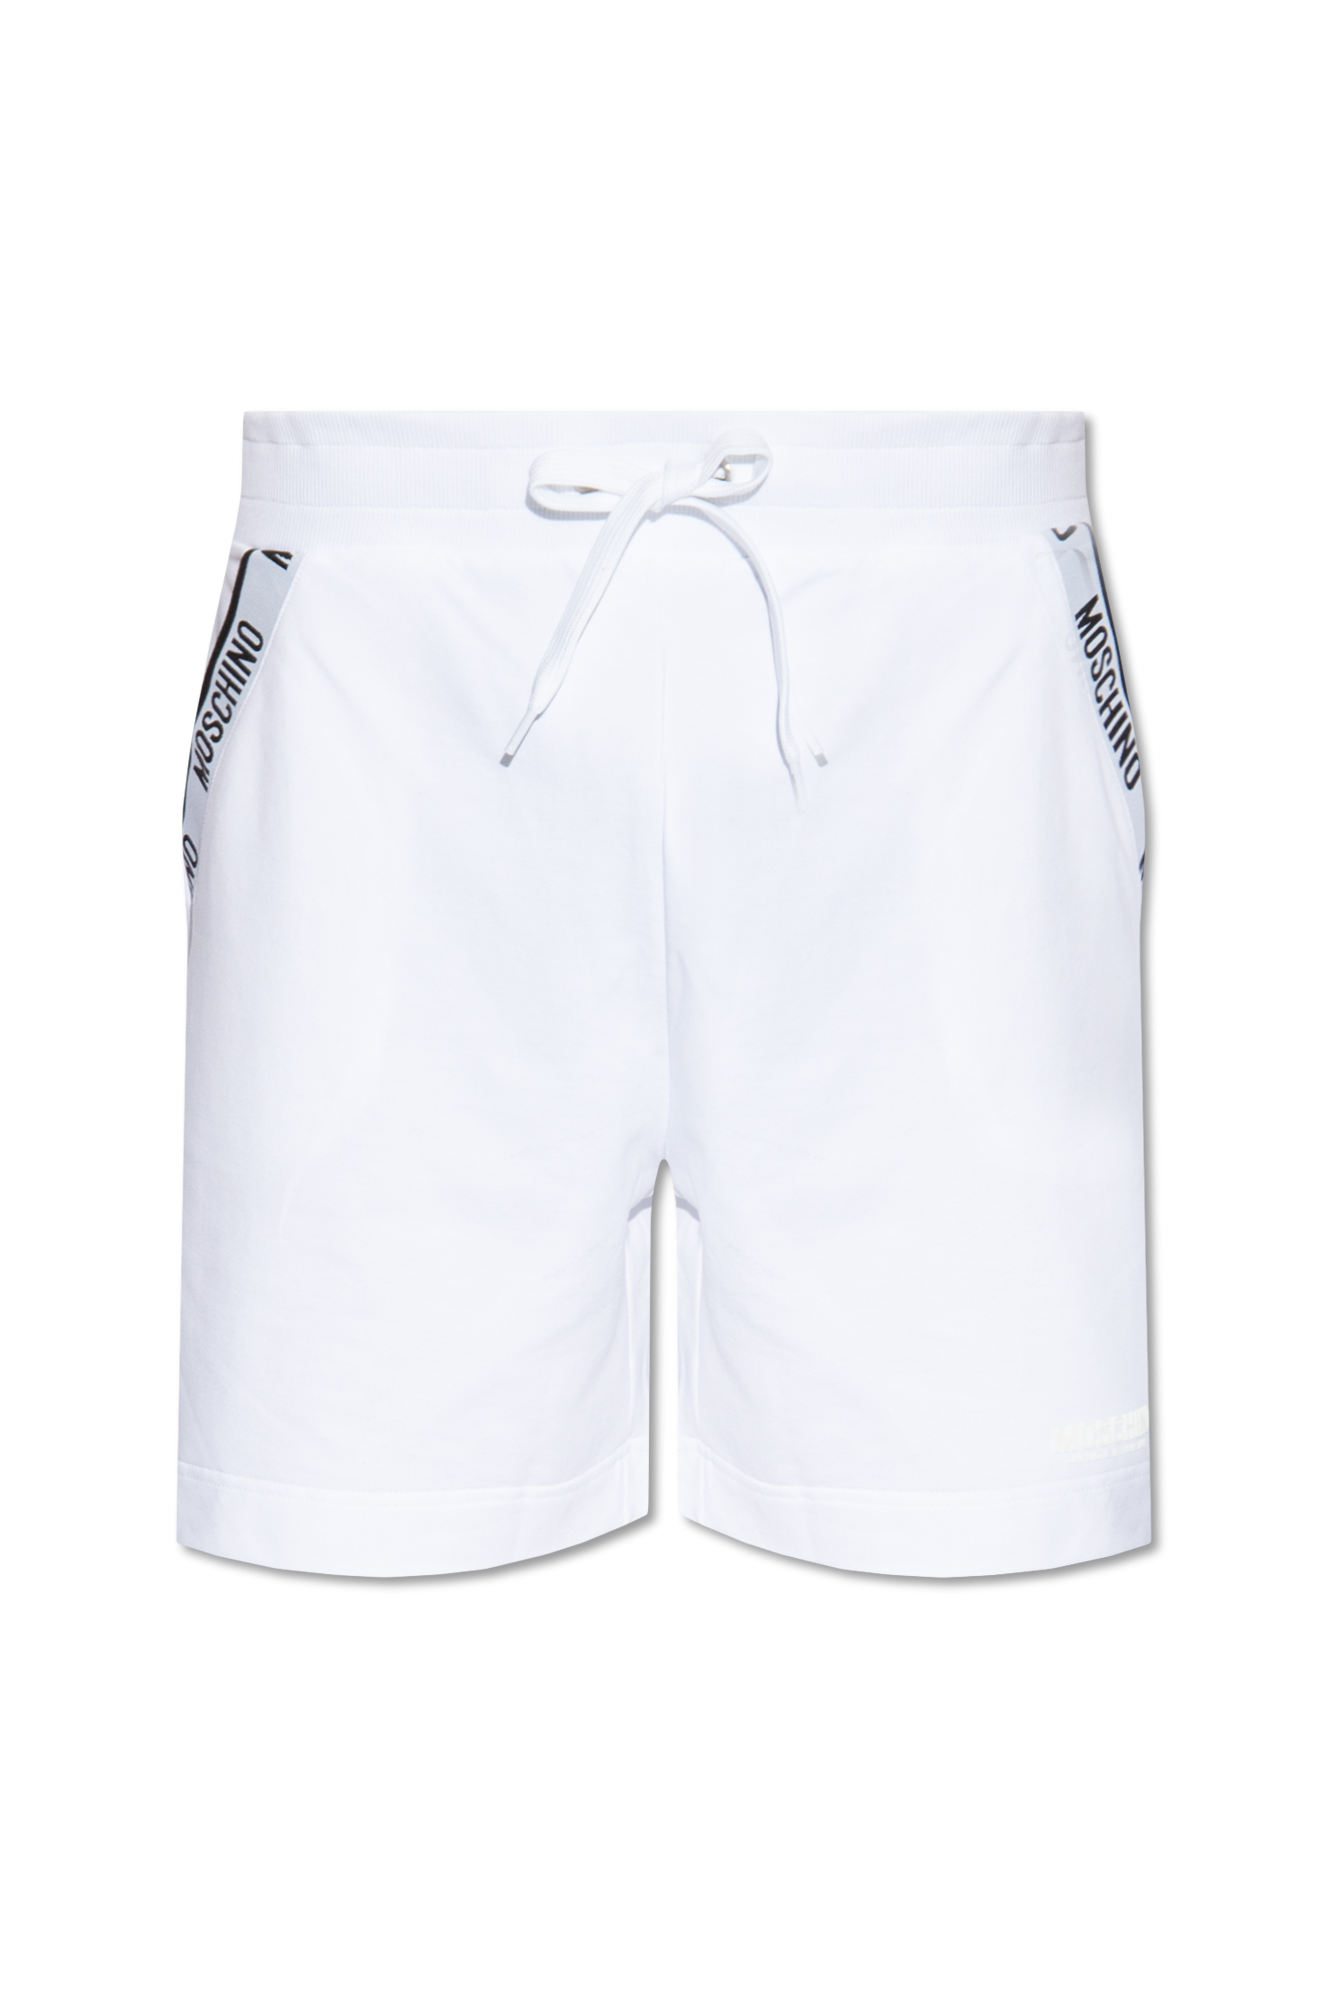 White Cotton shorts with logo Moschino - Vitkac Italy